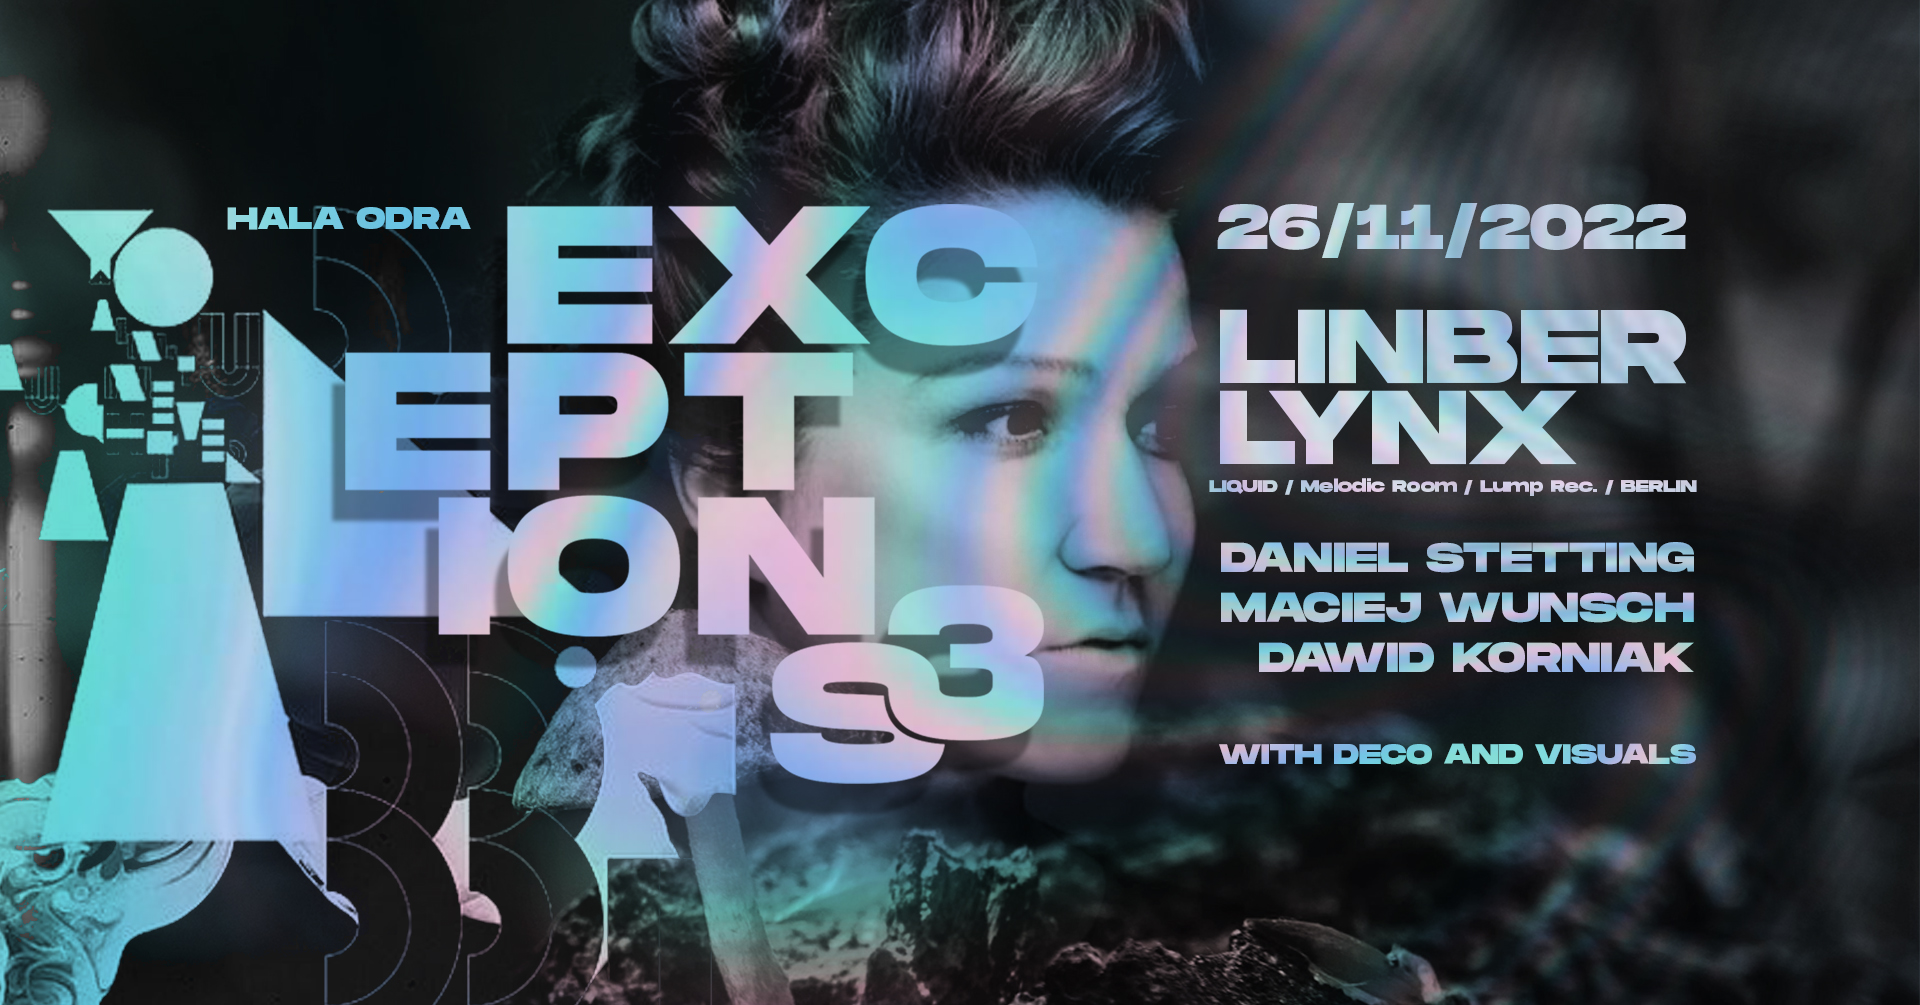 Exceptions pres. Linber Lynx (LIQUID / Melodic Room / Lump rec. / Berlin)